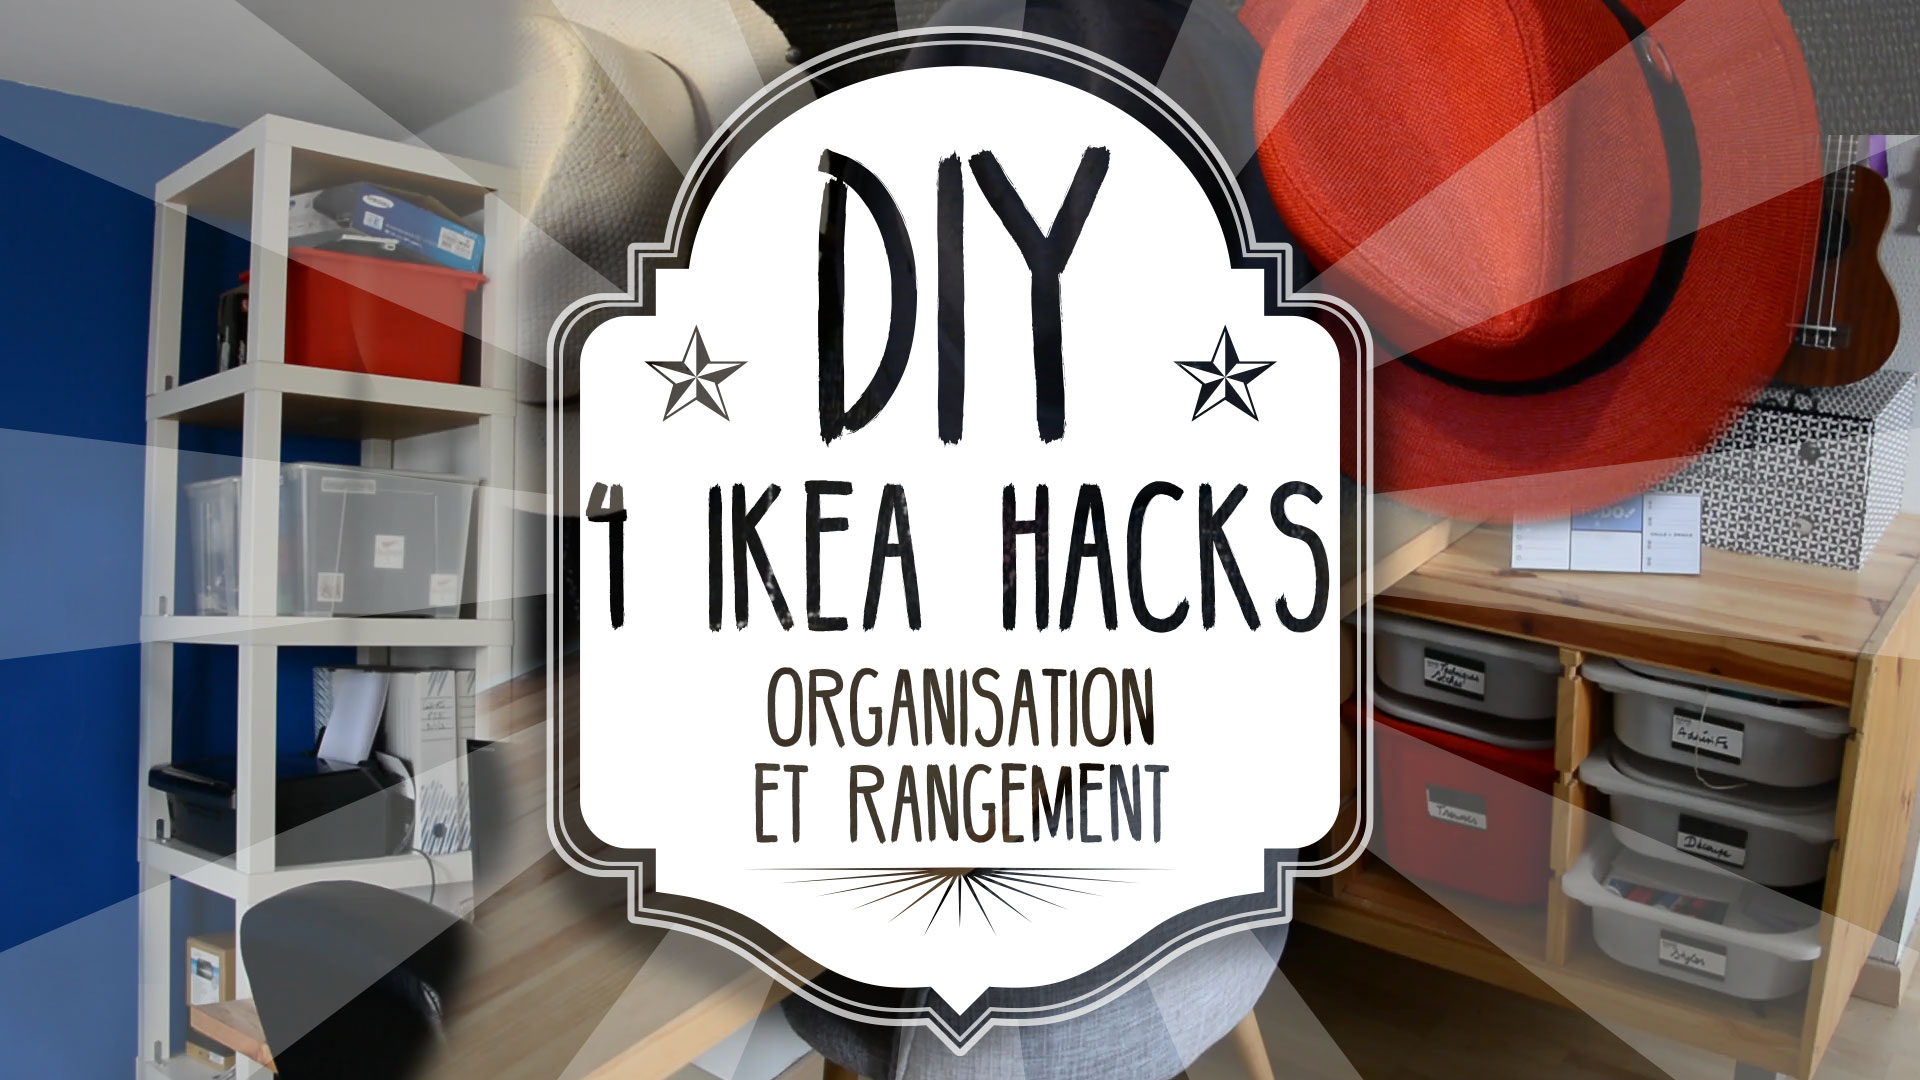 4 Ikea Hacks organisation et rangement